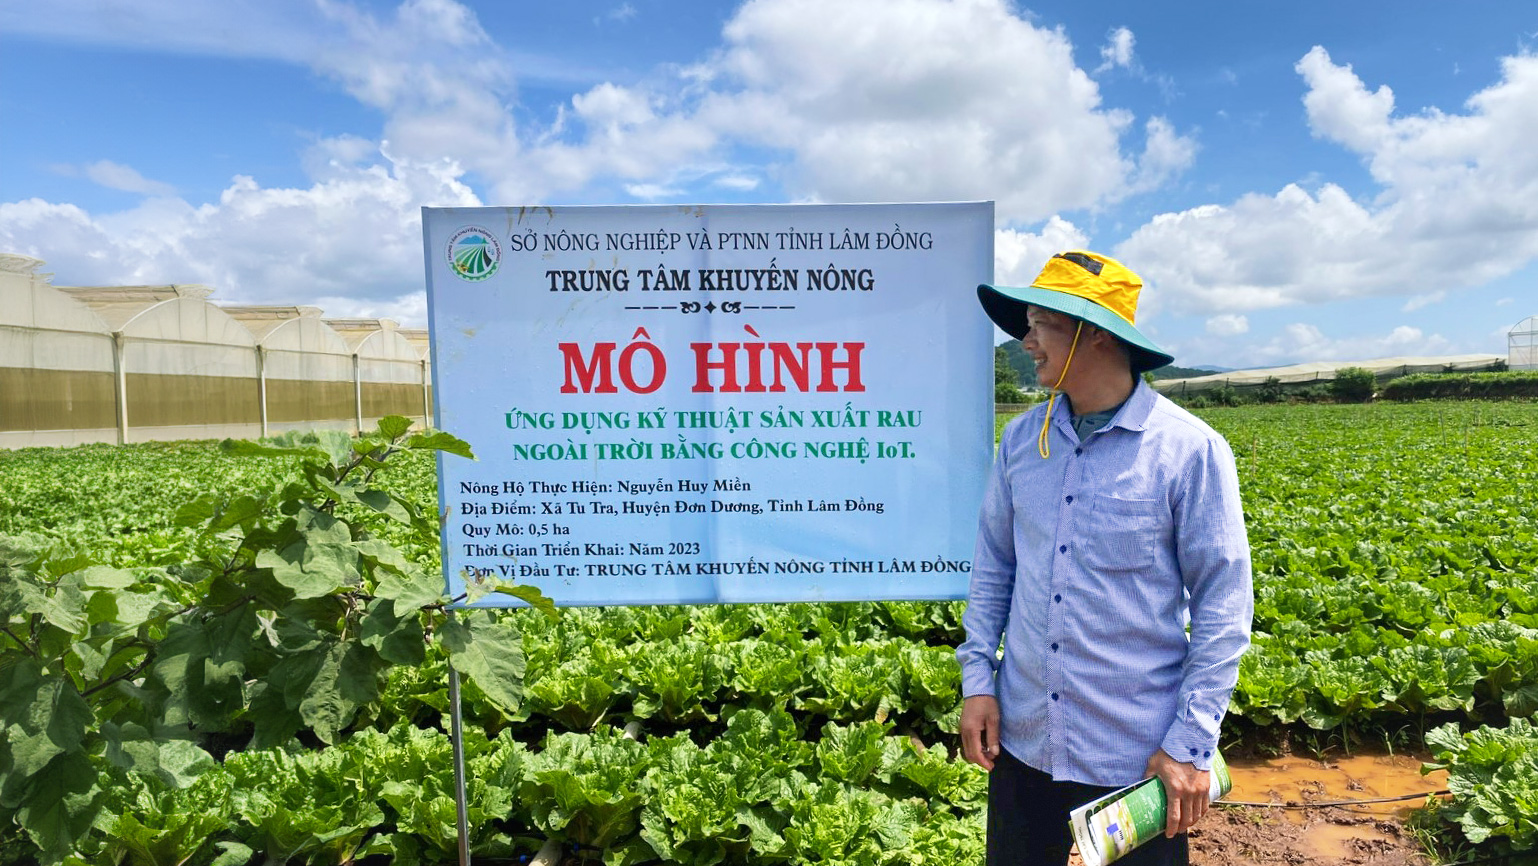 Mô hình ứng dụng kỹ thuật sản xuất rau ngoài trời bằng công nghệ IoT tại xã Tu Tra, huyện Đơn Dương, hiệu quả kinh tế tăng 5% so với ngoài mô hình